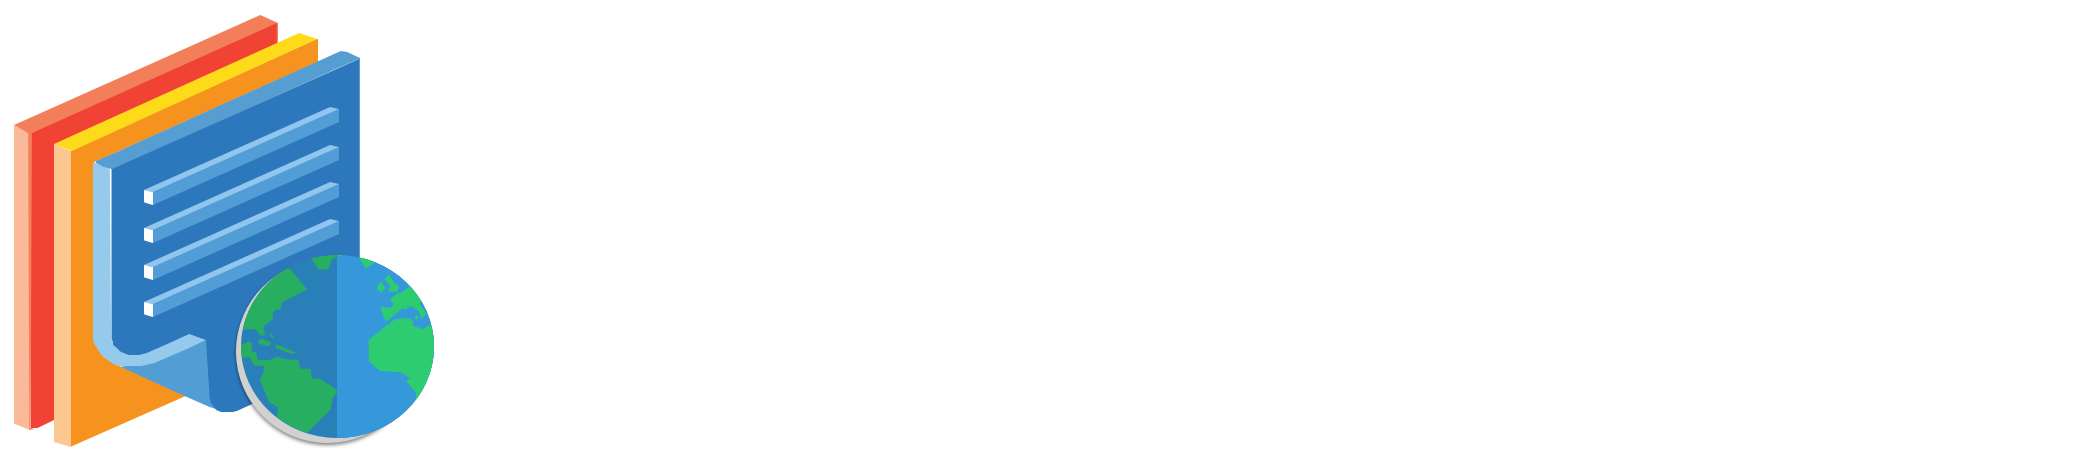 gdocweb Logo - Google Docs to website